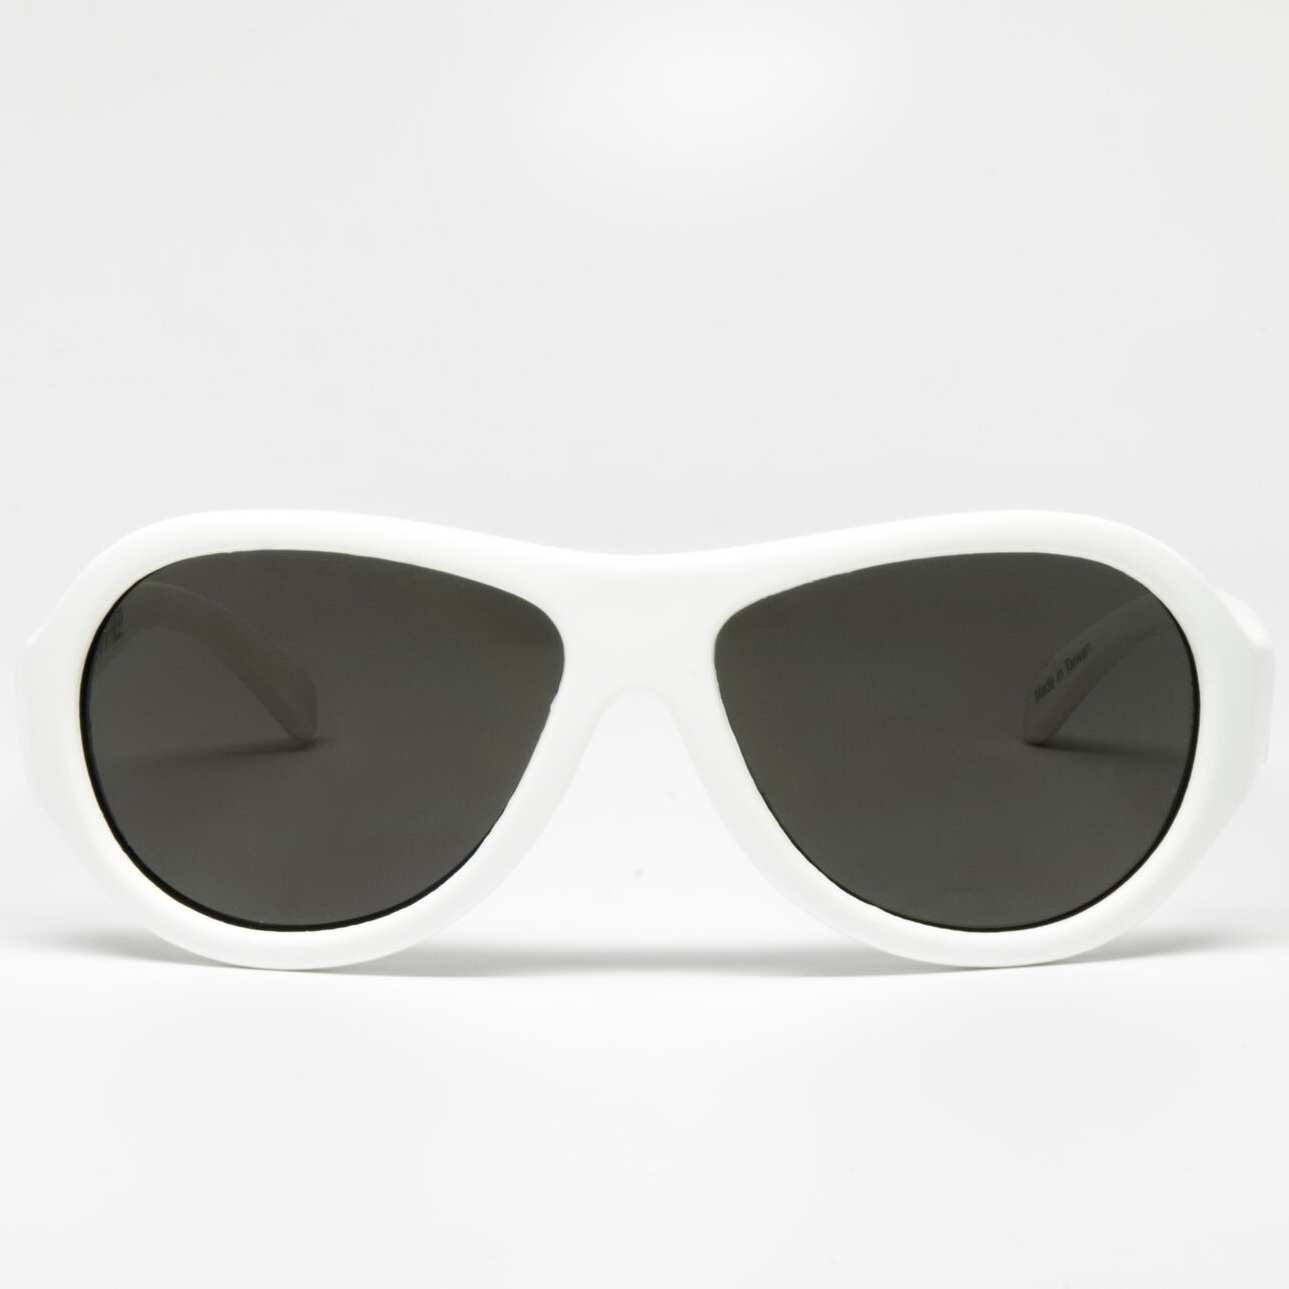 Солнцезащитные очки - Babiators Original Aviator. Шаловливый белый/Wicked White Junior  